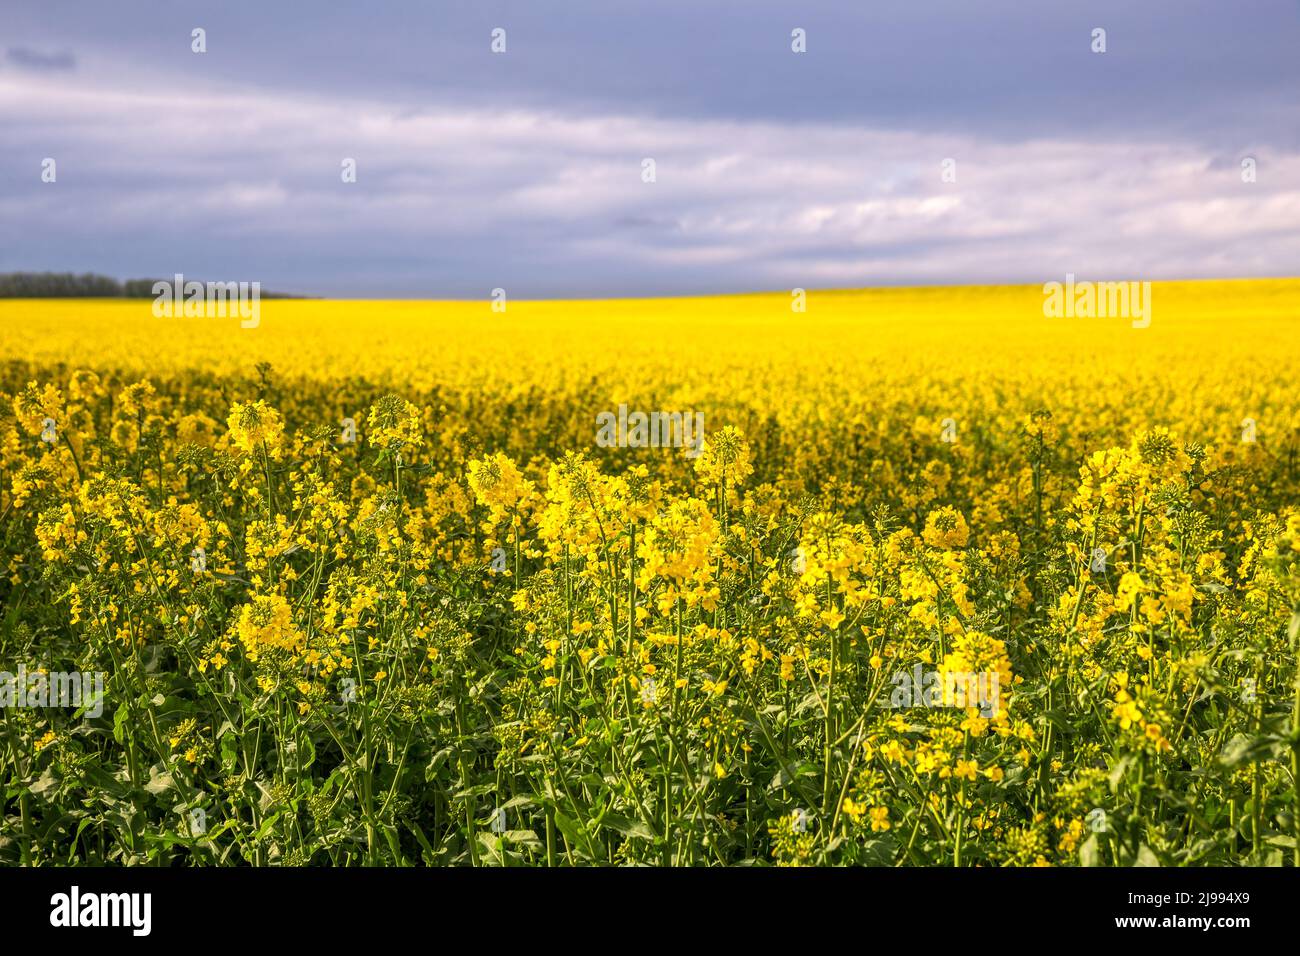 Gran hermoso campo agrícola de colza floreciente al horizonte Foto de stock